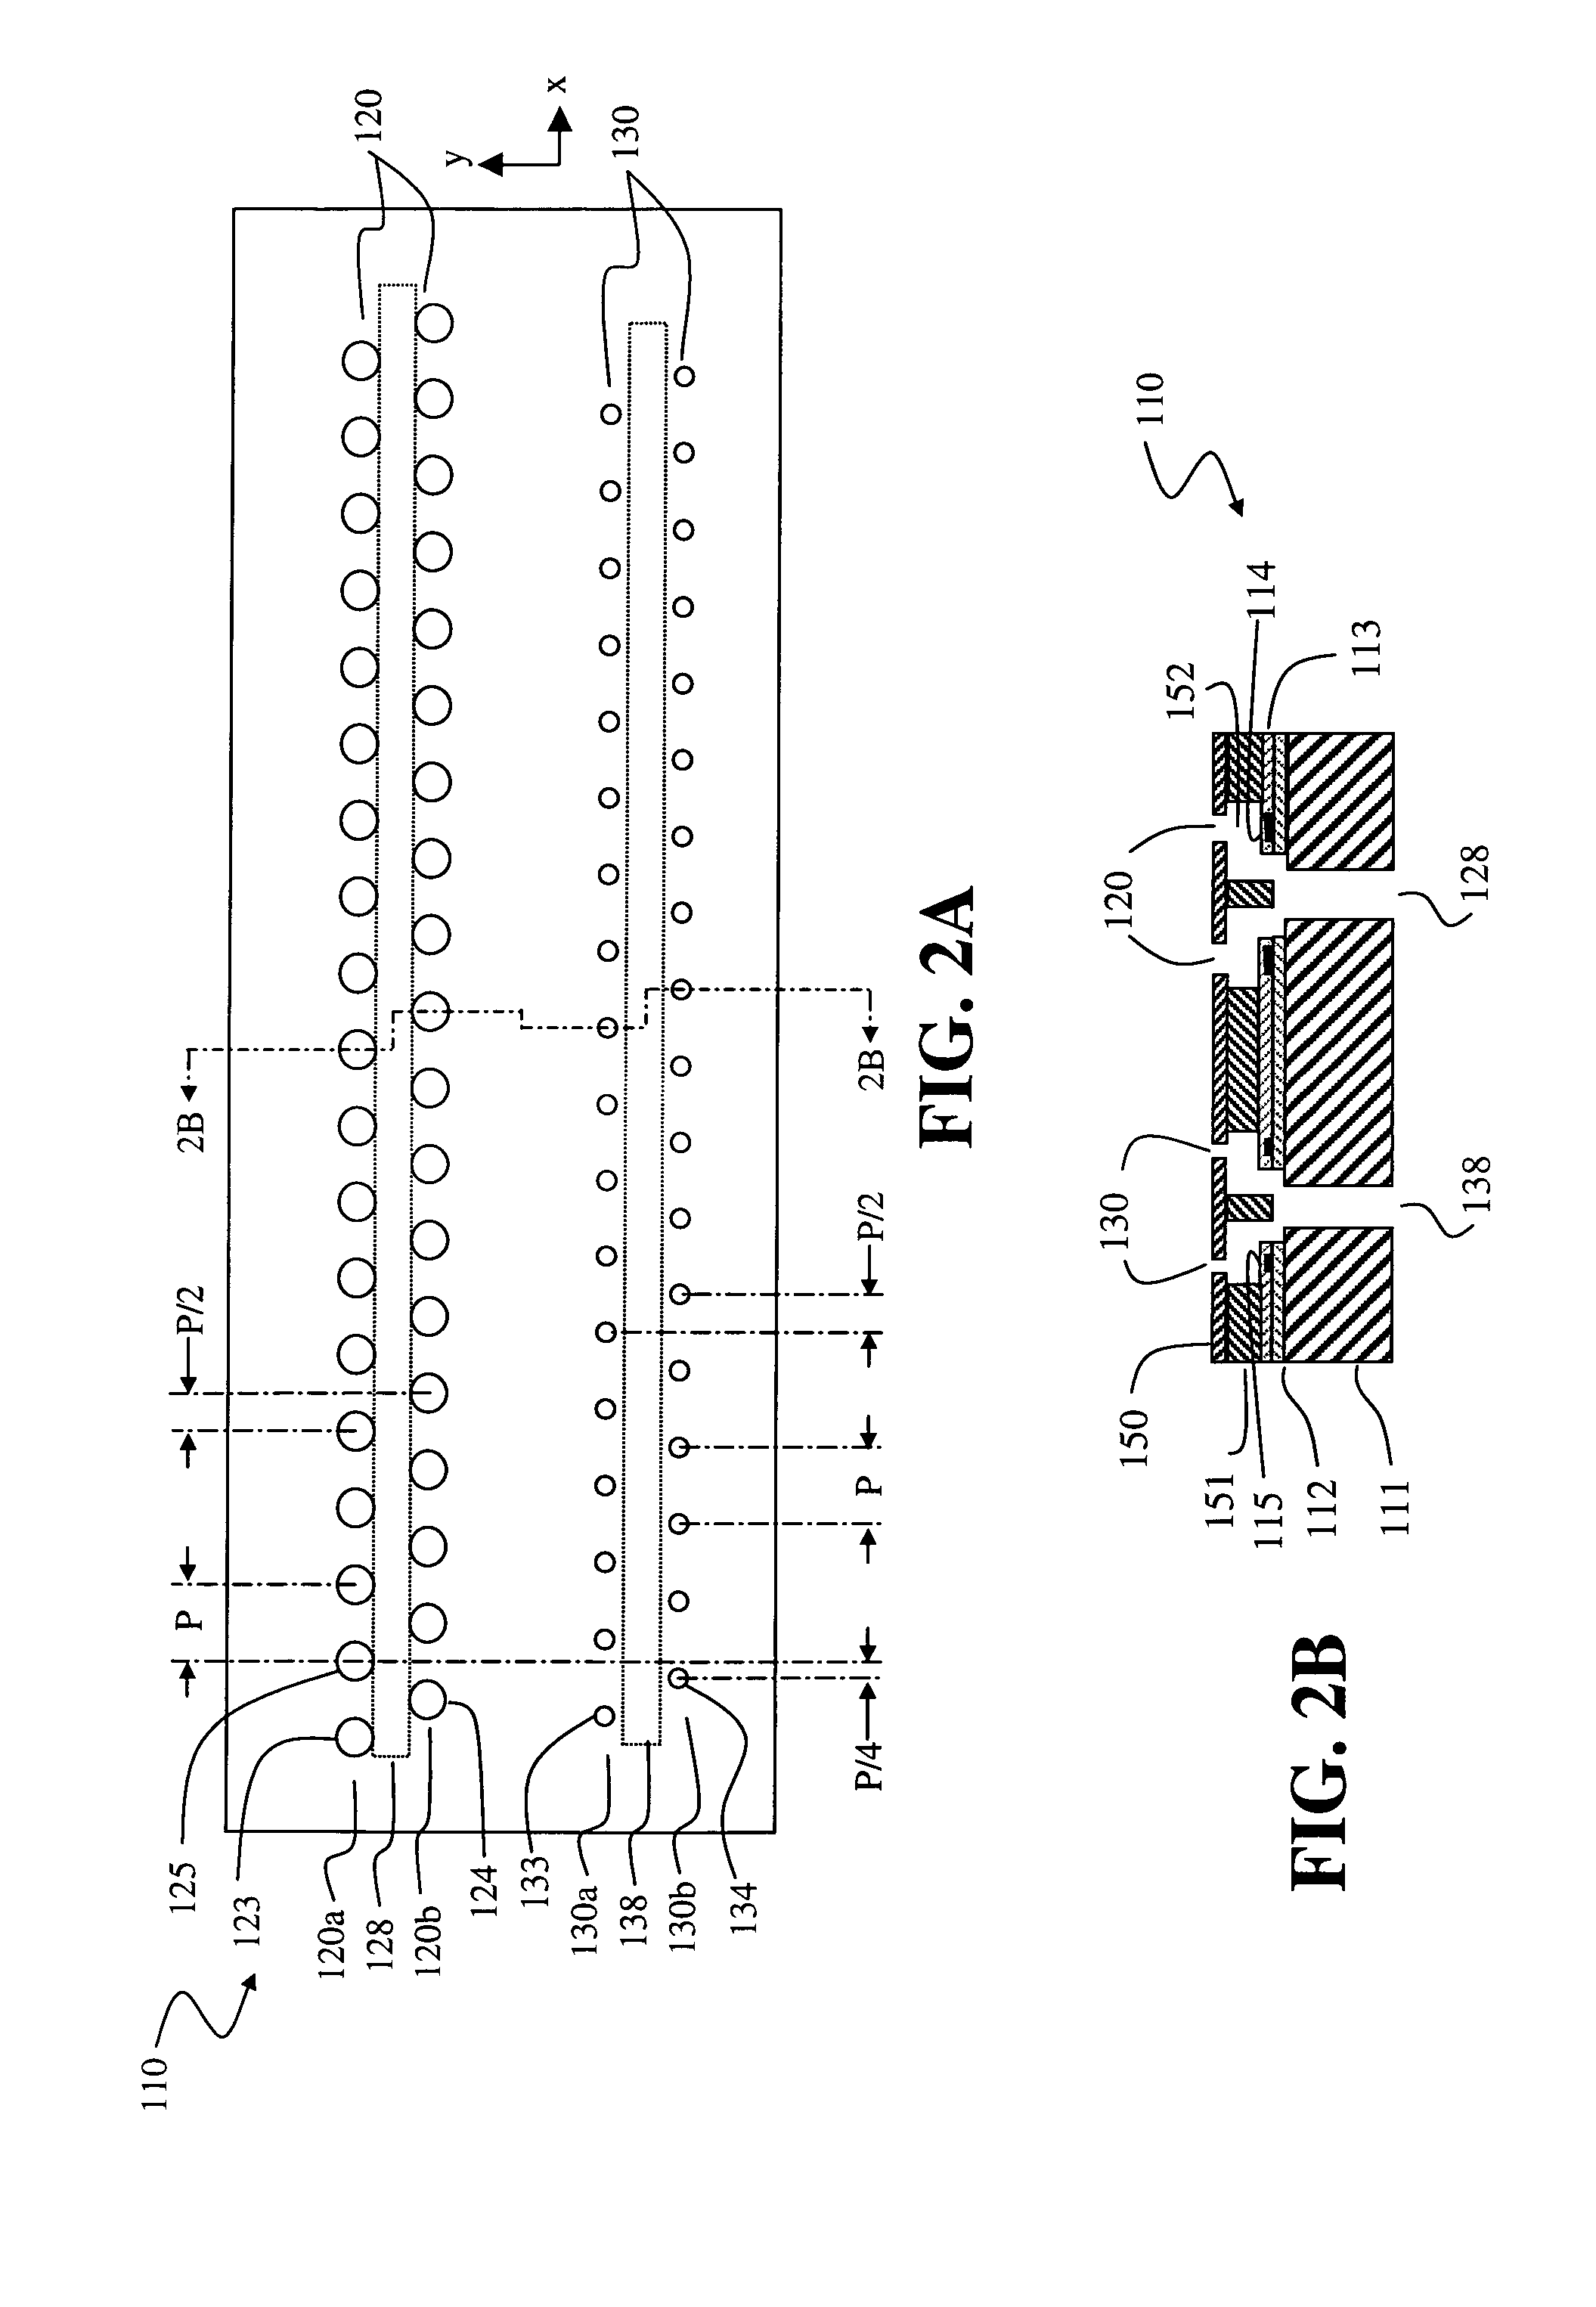 Fluid ejection device nozzle array configuration